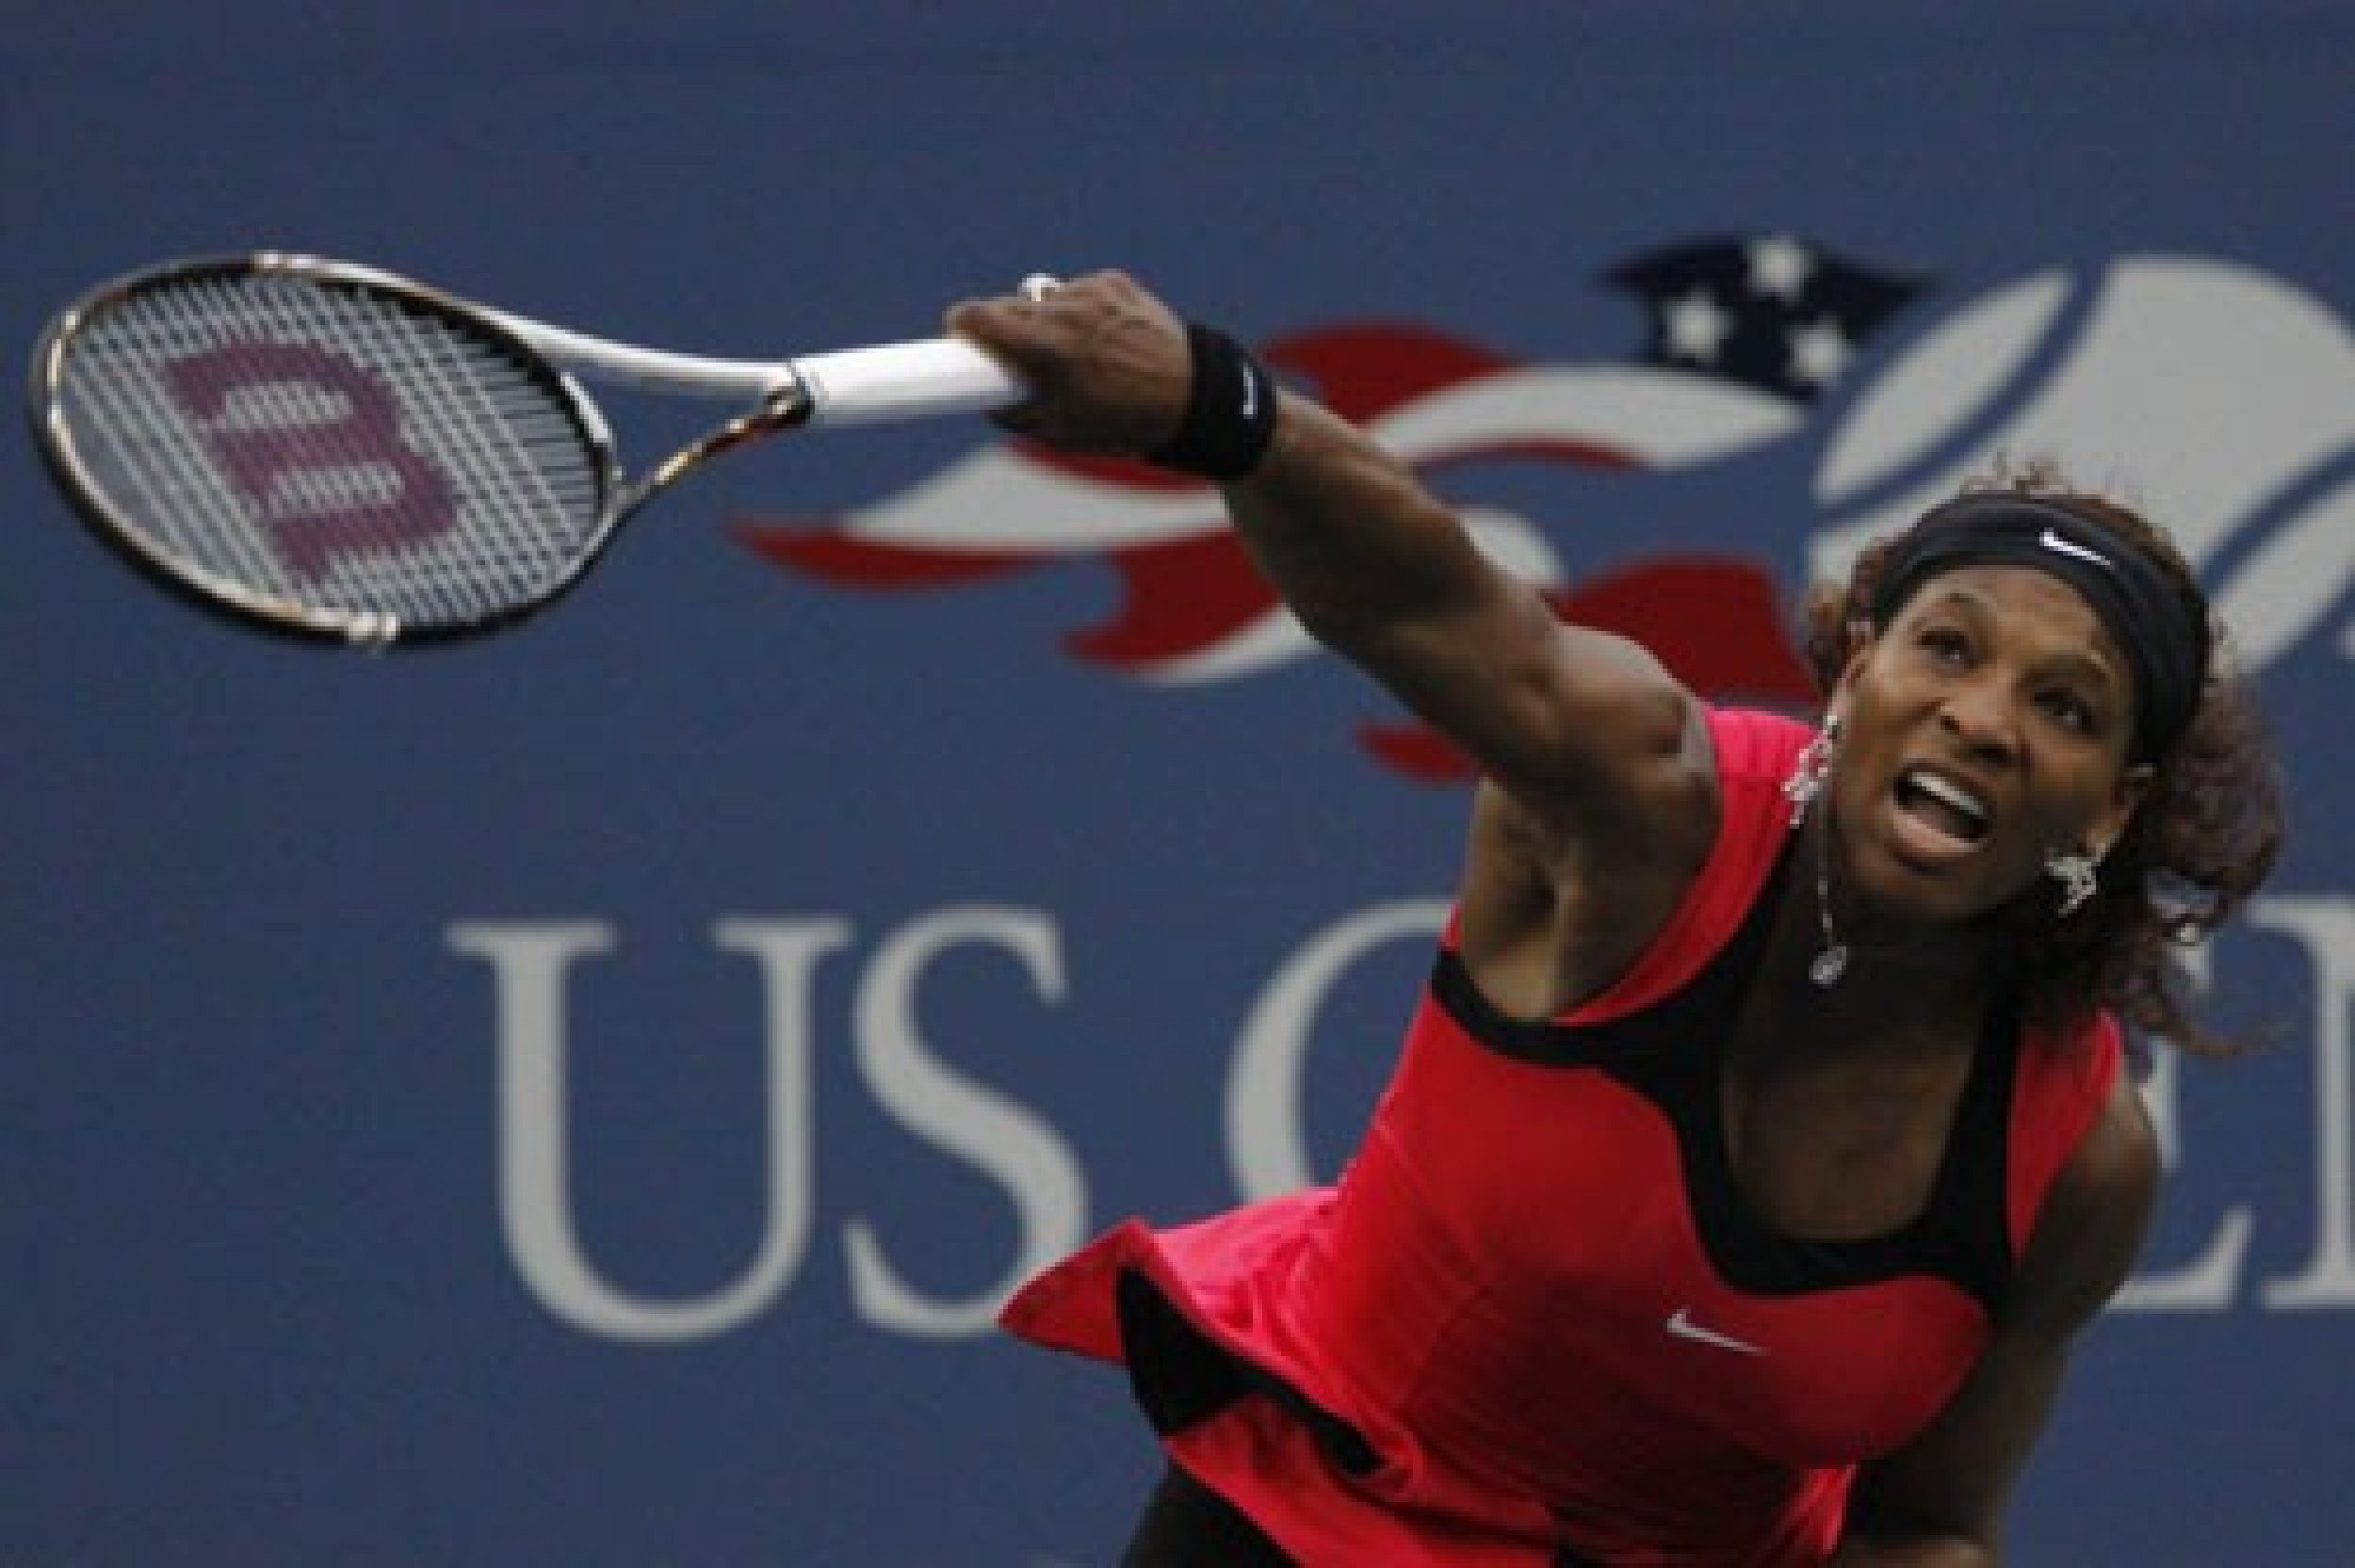 Serena Williams USA serving to Samantha Stosur AUS